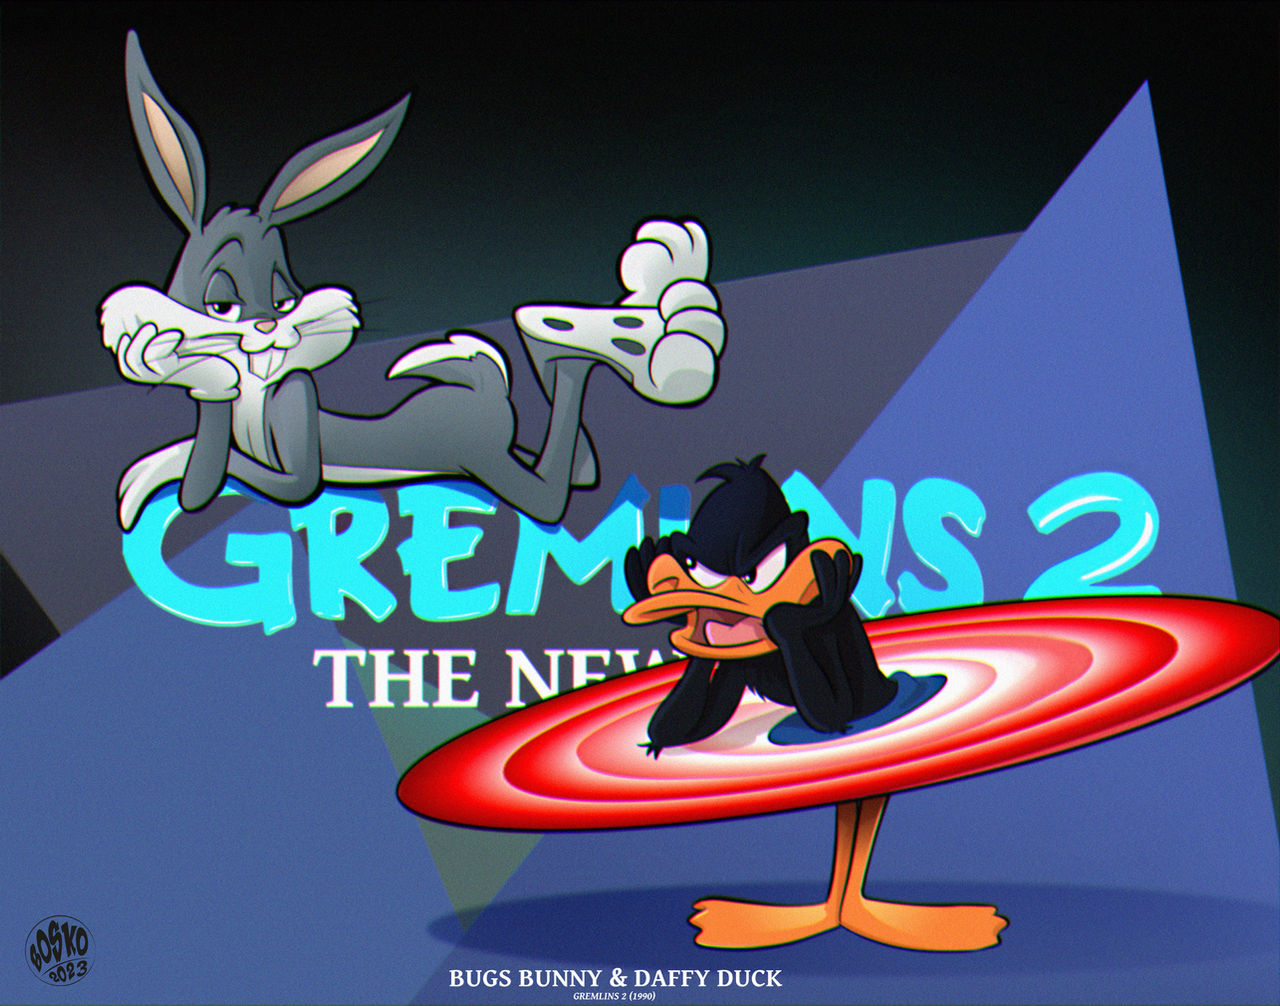 1990 - Gremlins 2
